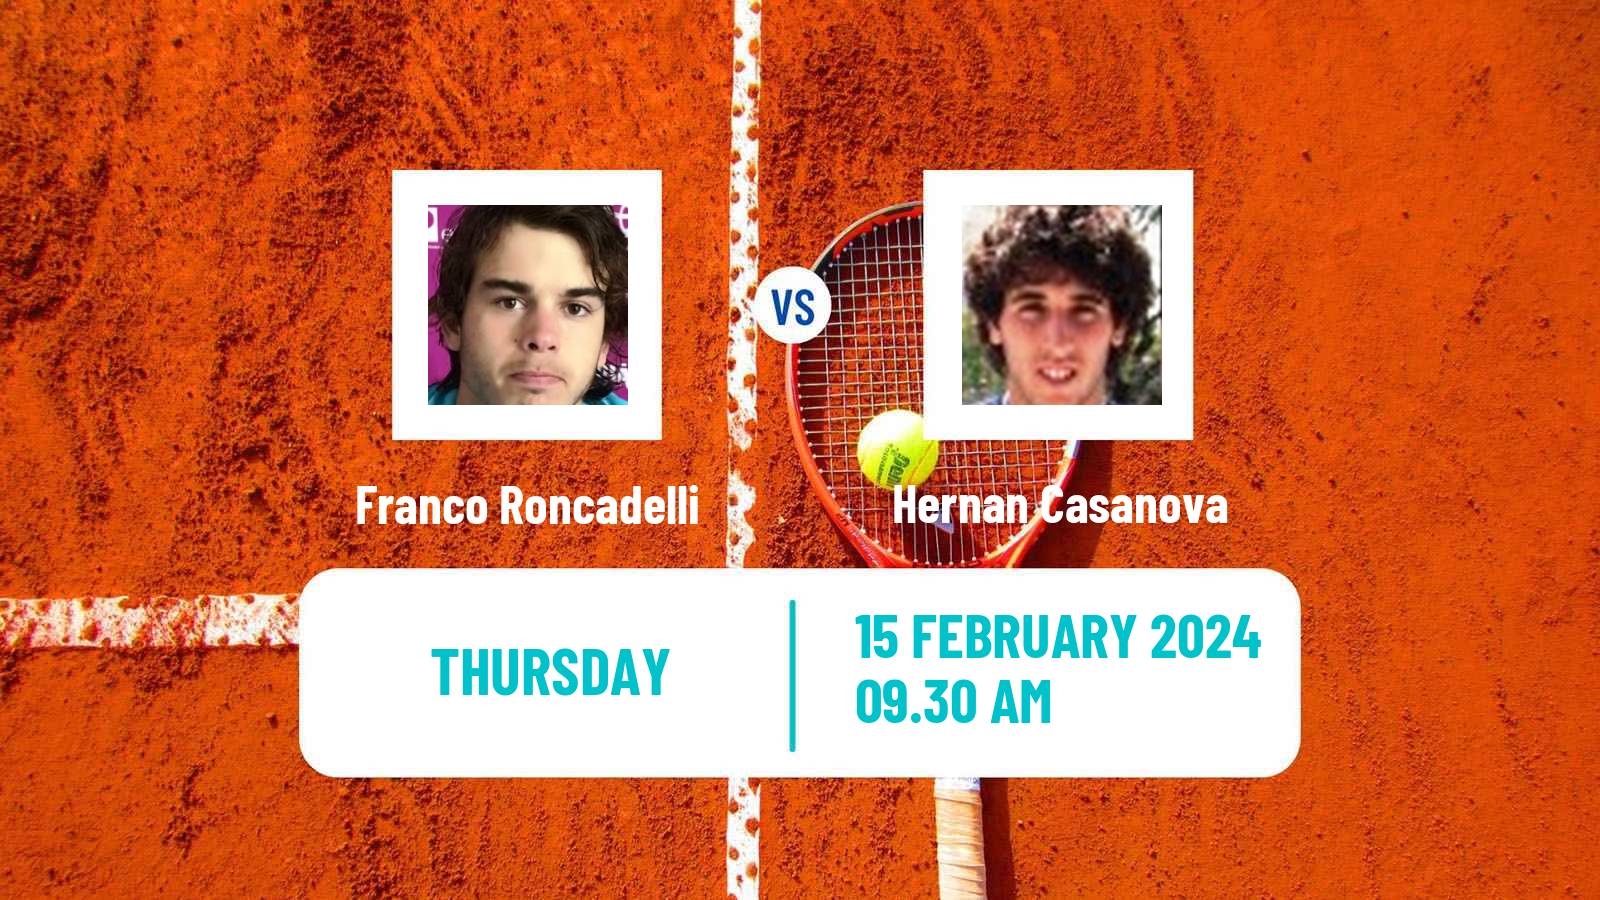 Tennis ITF M25 Punta Del Este 2 Men Franco Roncadelli - Hernan Casanova